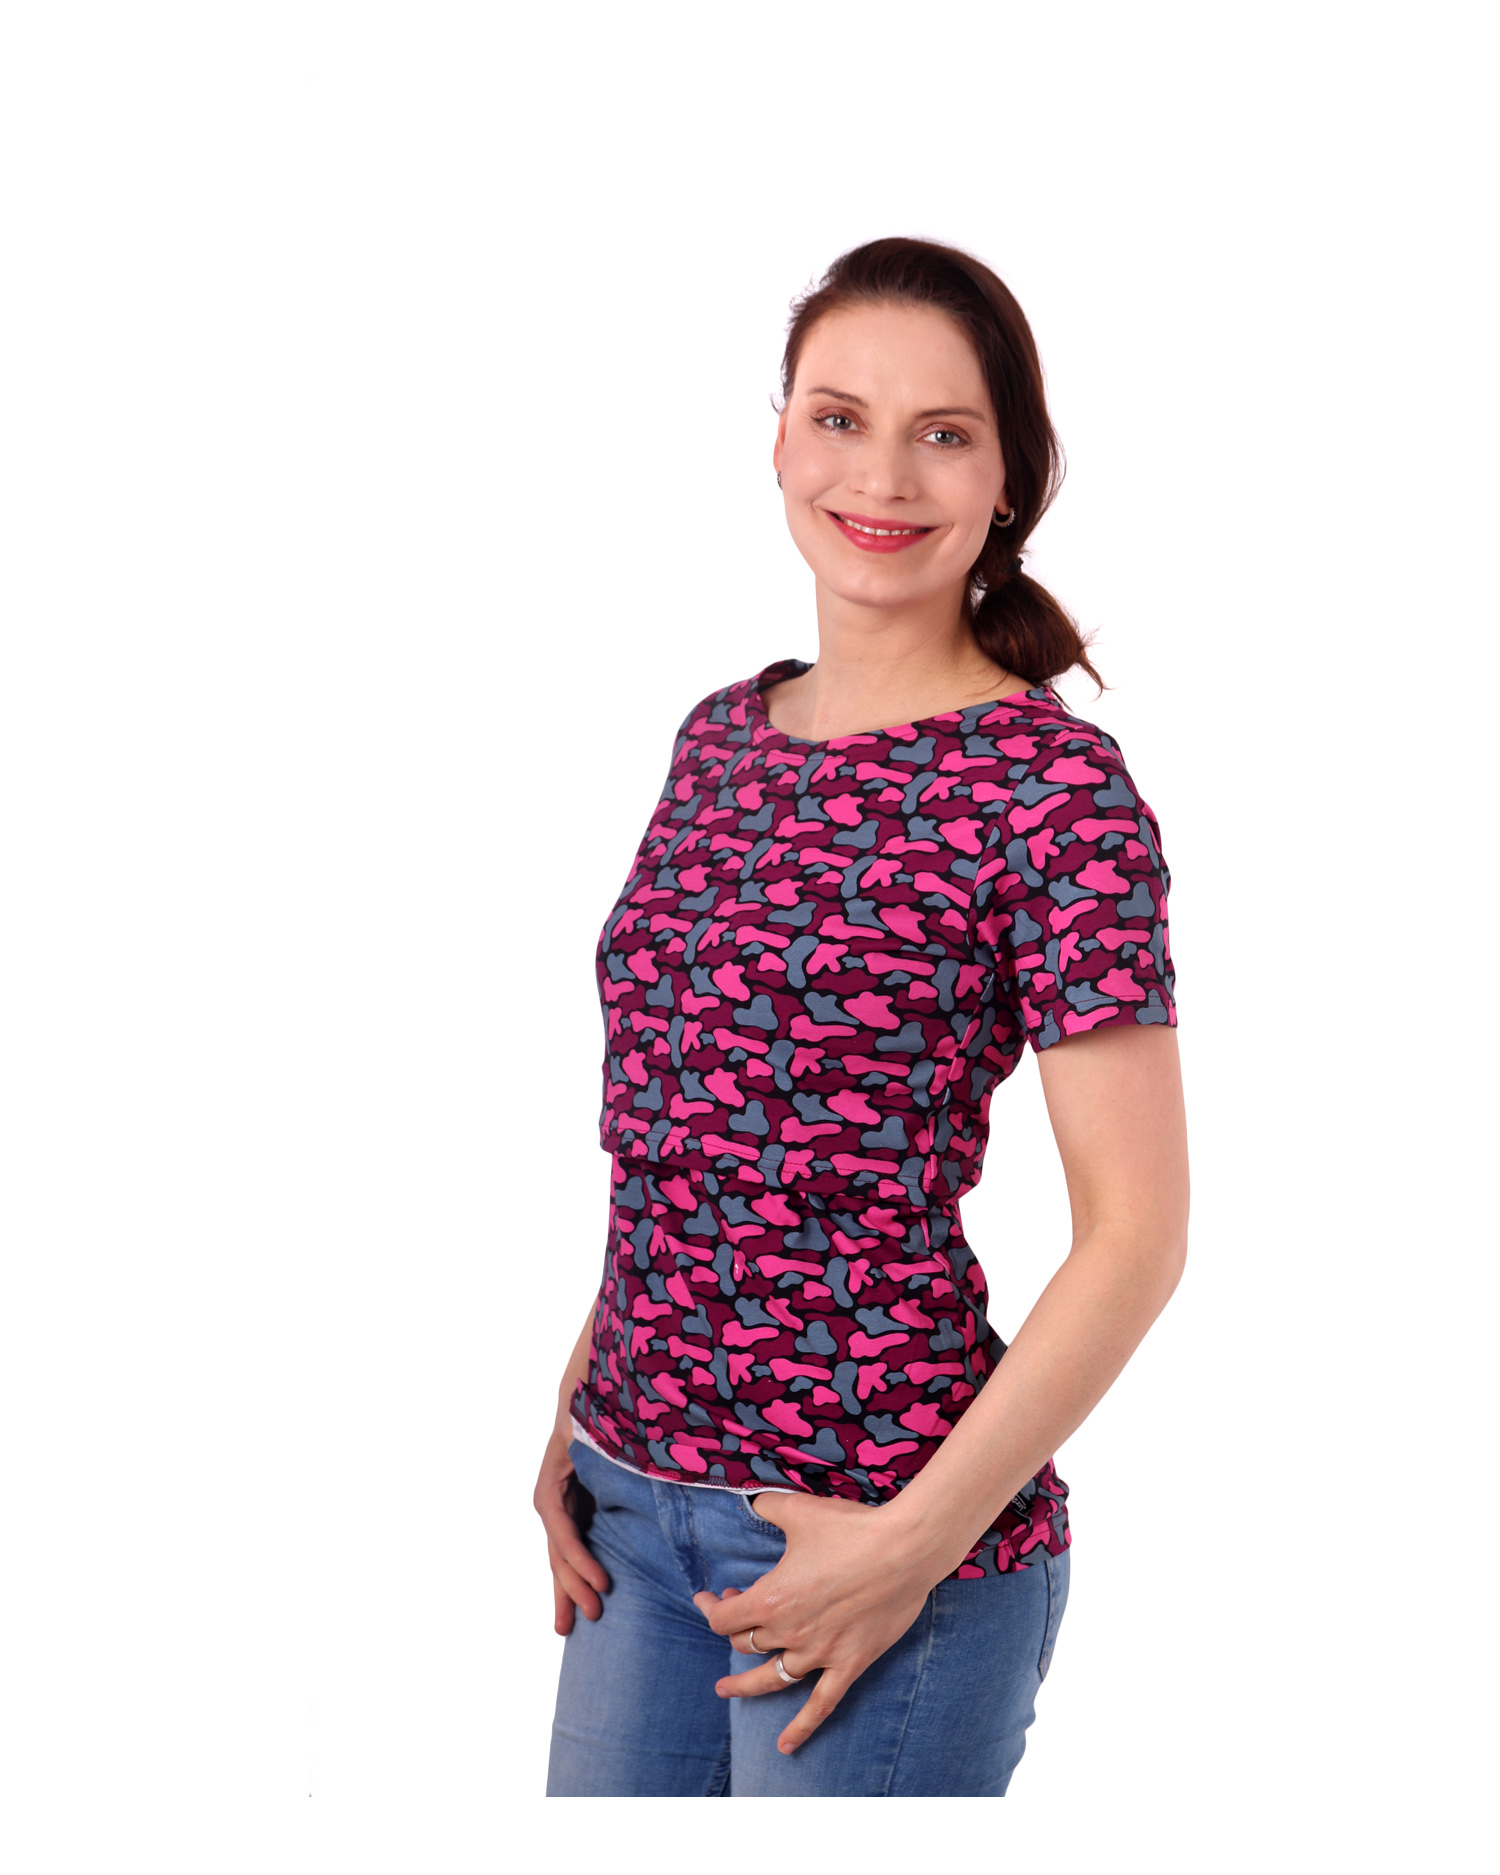 Dojčiace tričko Lenka, krátky rukáv, fľaky ružové na čierne, L / XL